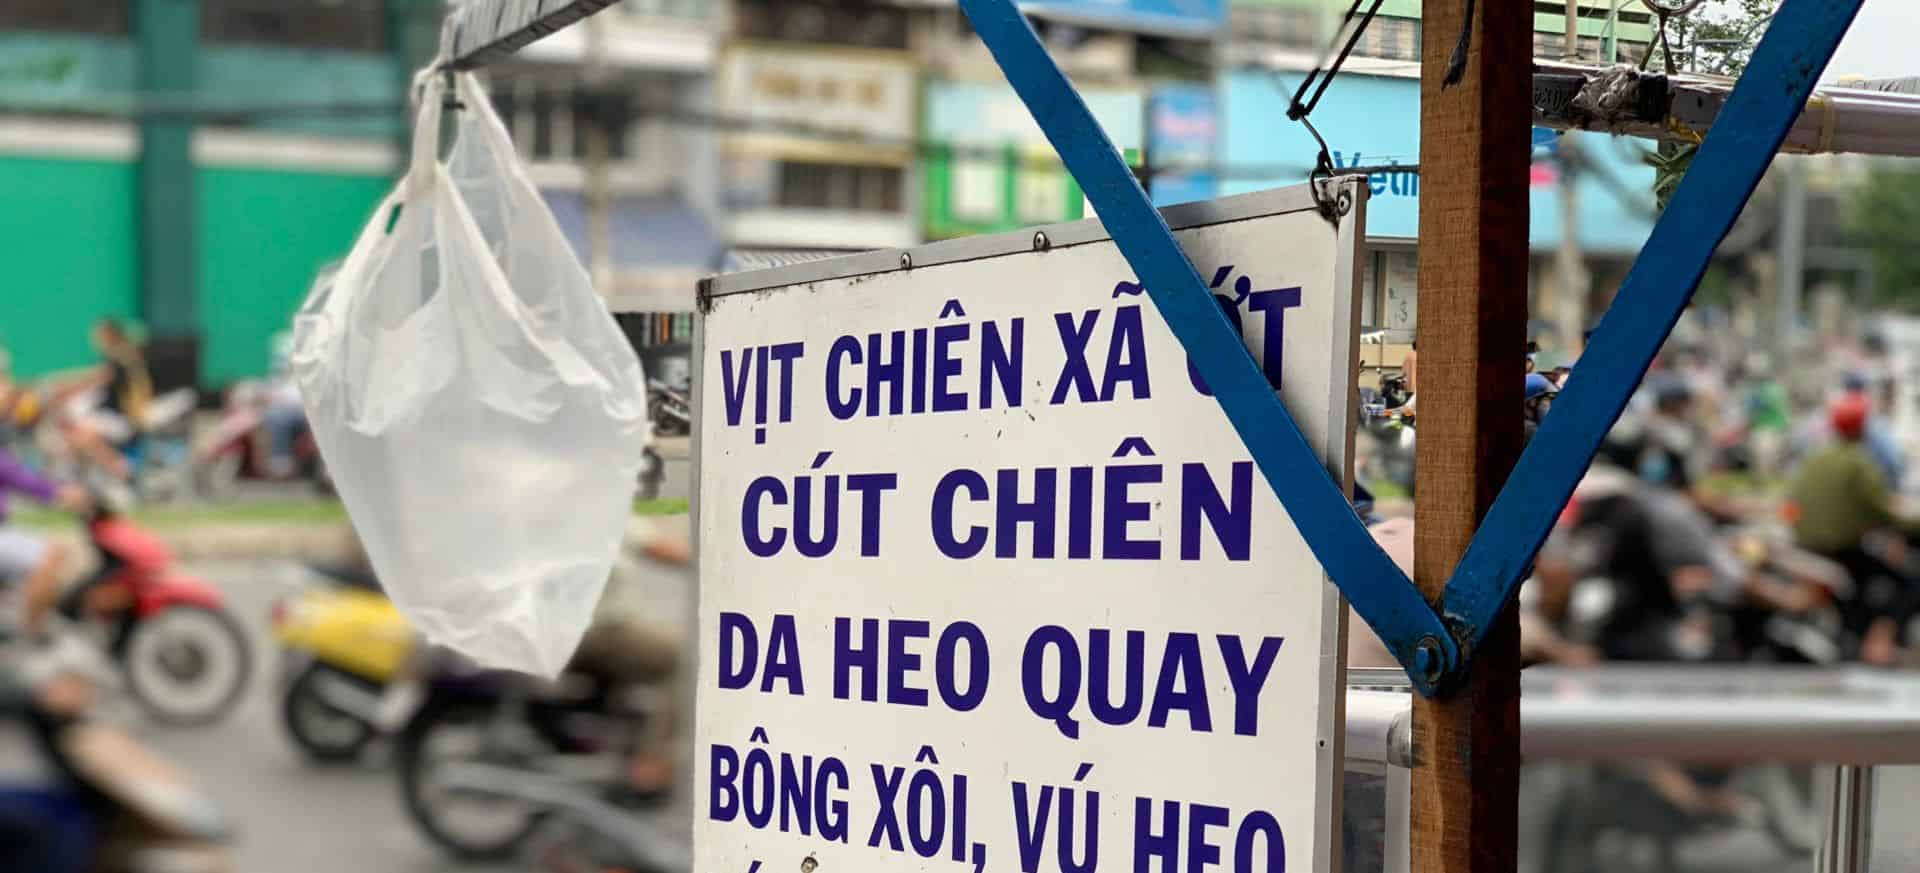 Xe vịt chiên sả ớt nổi tiếng hơn 20 năm khu Chợ Lớn Sài Gòn - Ảnh 1.